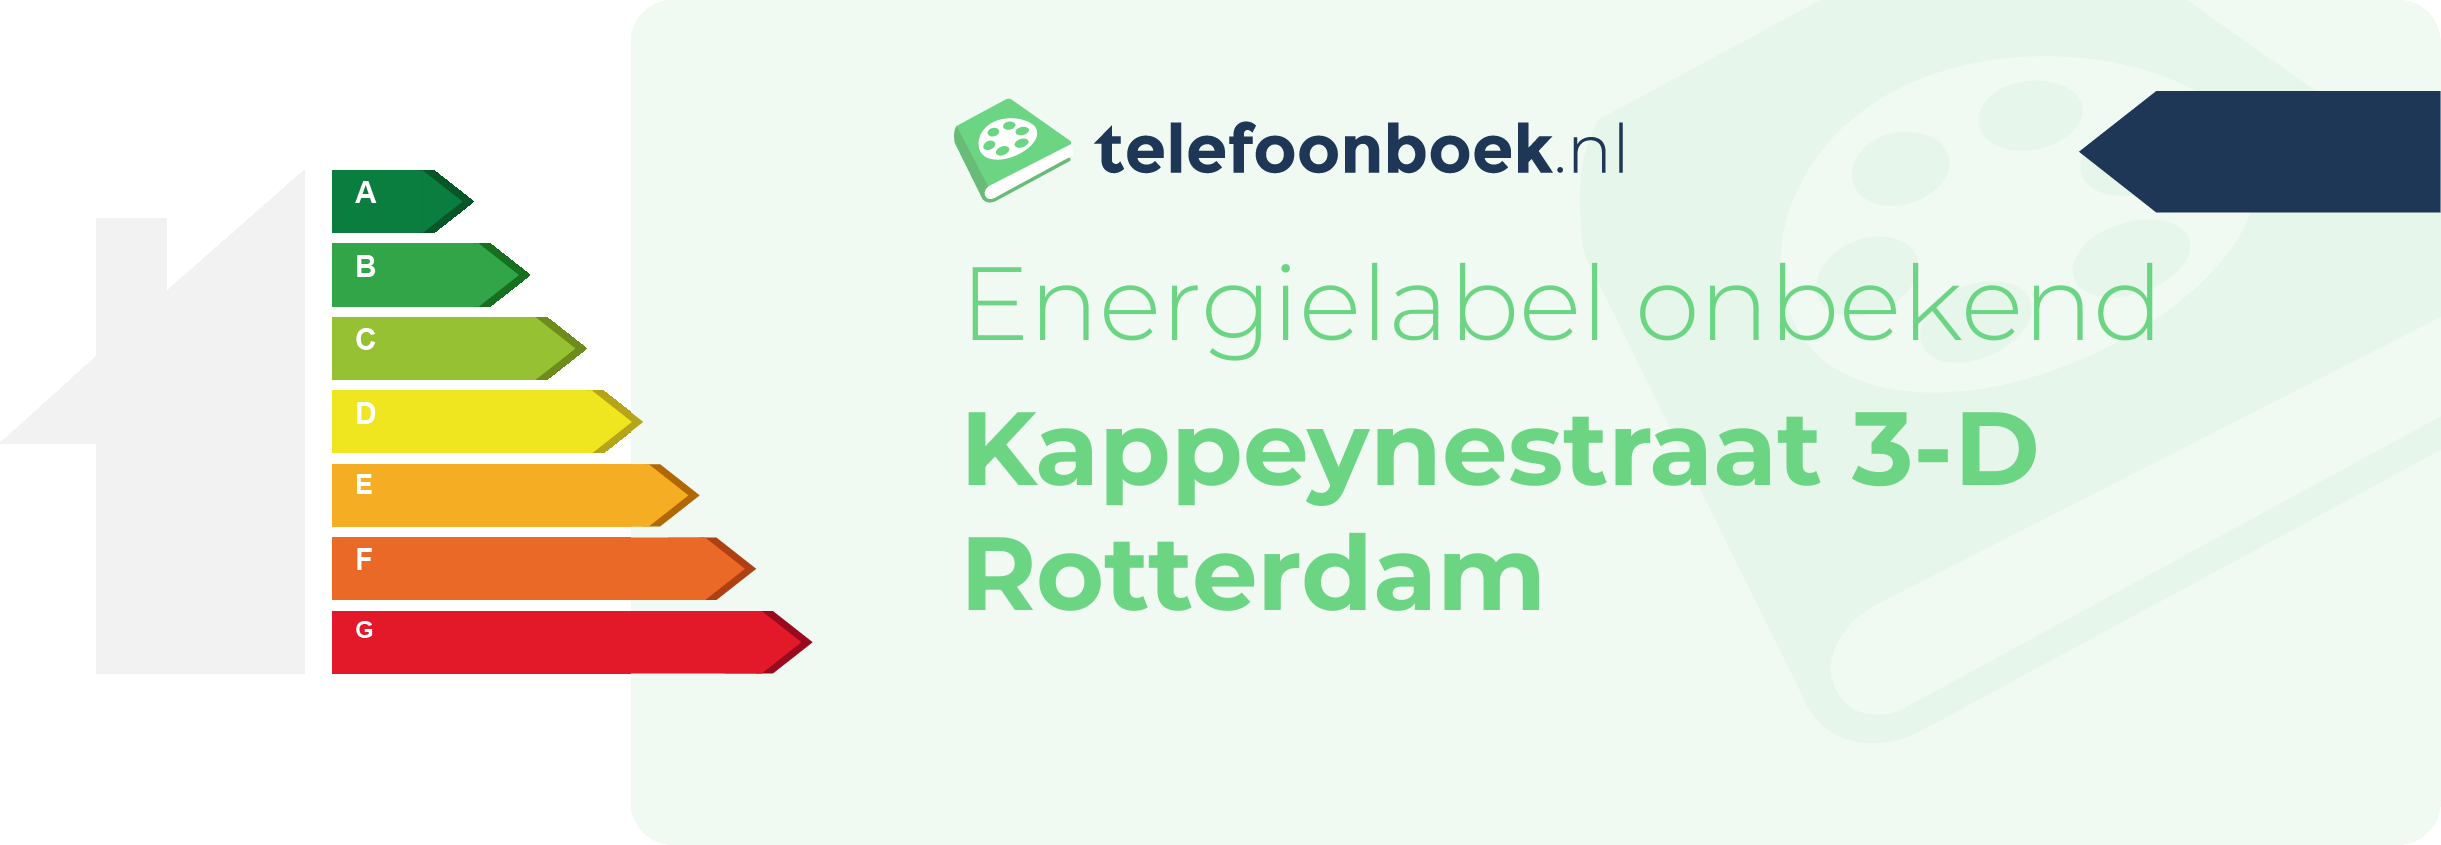 Energielabel Kappeynestraat 3-D Rotterdam